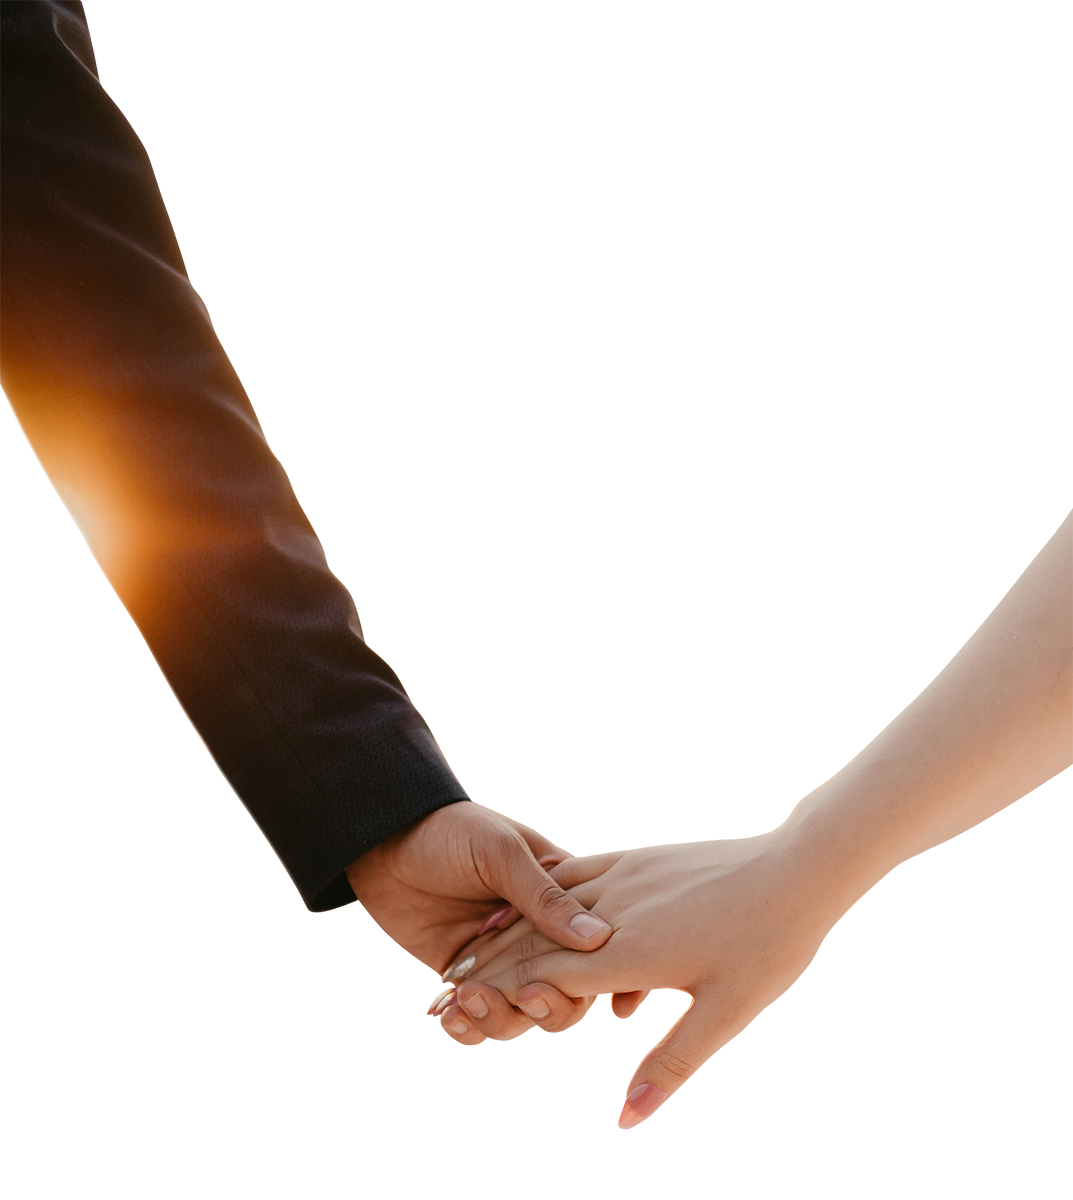 holding hands PNG image, transparent holding hands png, holding hands png hd images download